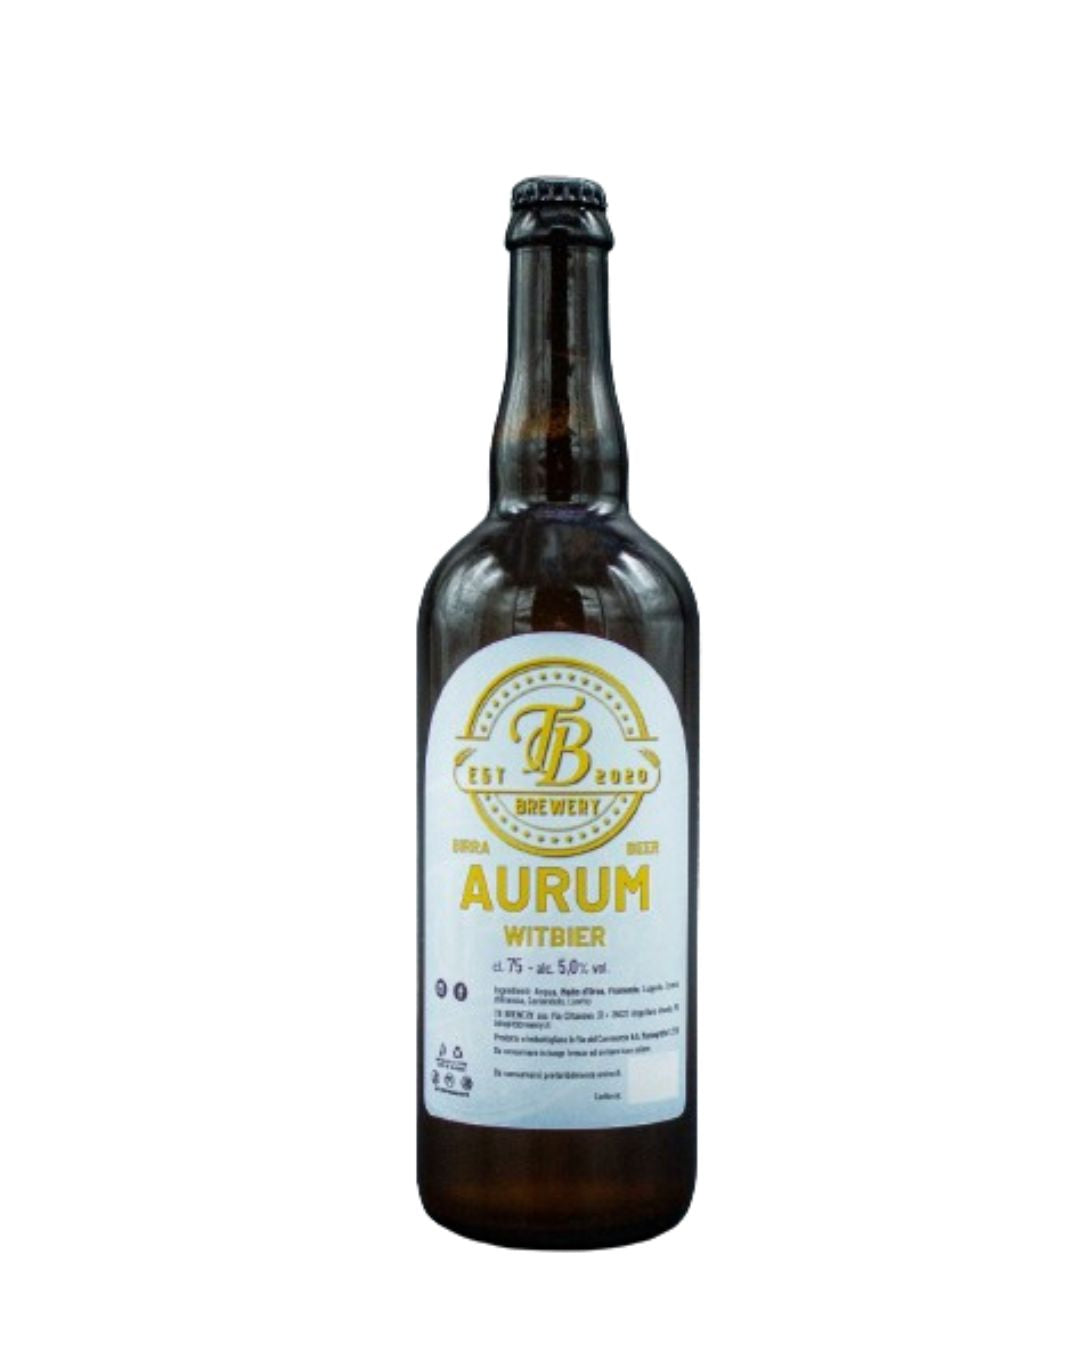 Aurum - Witbier Vol.5% - TB Brewery